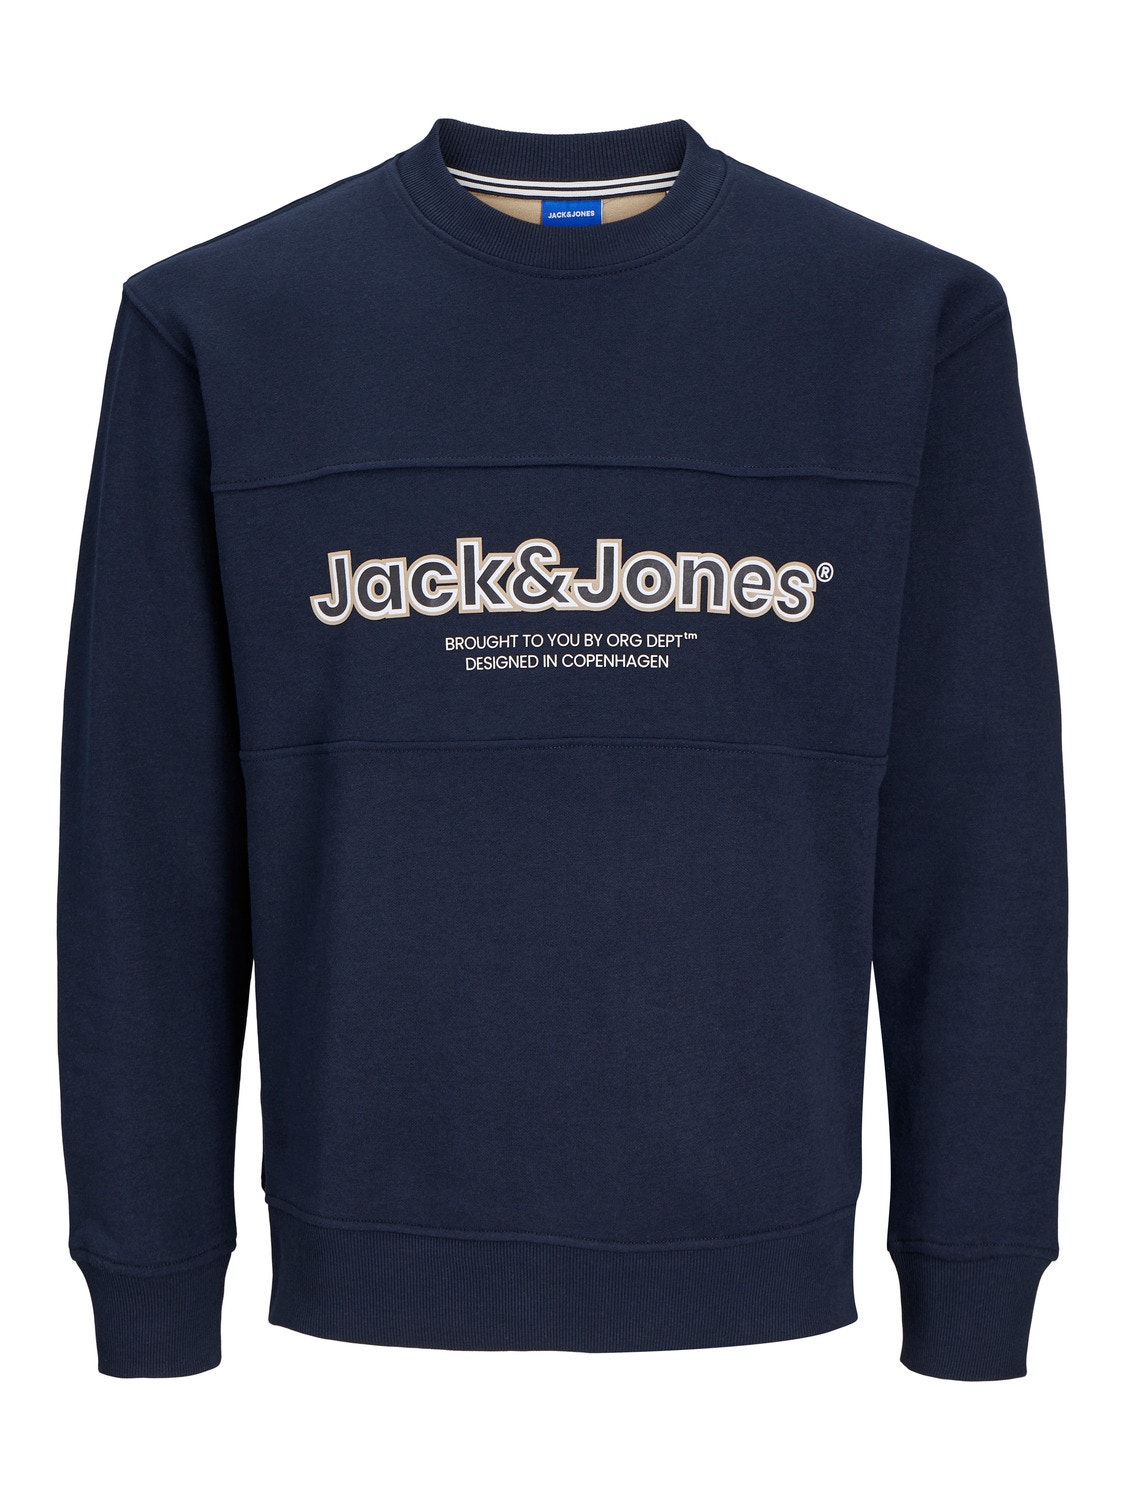 Jack & Jones Printed Crewn Neck Sweatshirt -Sky Captain - 12246804